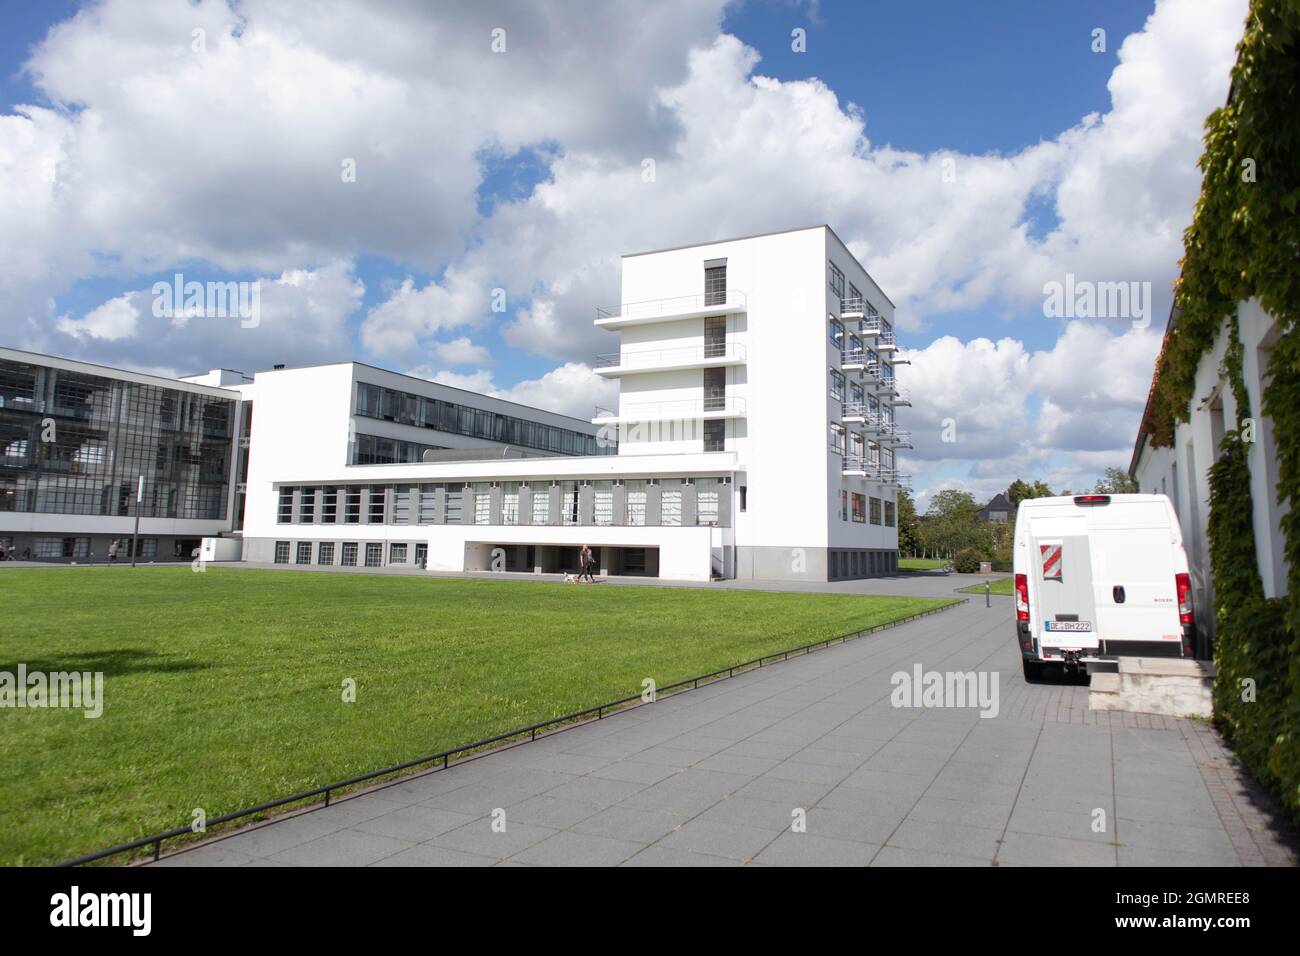 Bauhaus, Primera Escuela de Diseño Industrial. Dessau, Alemania.  Fotografías de alta calidad Fotografía de stock - Alamy